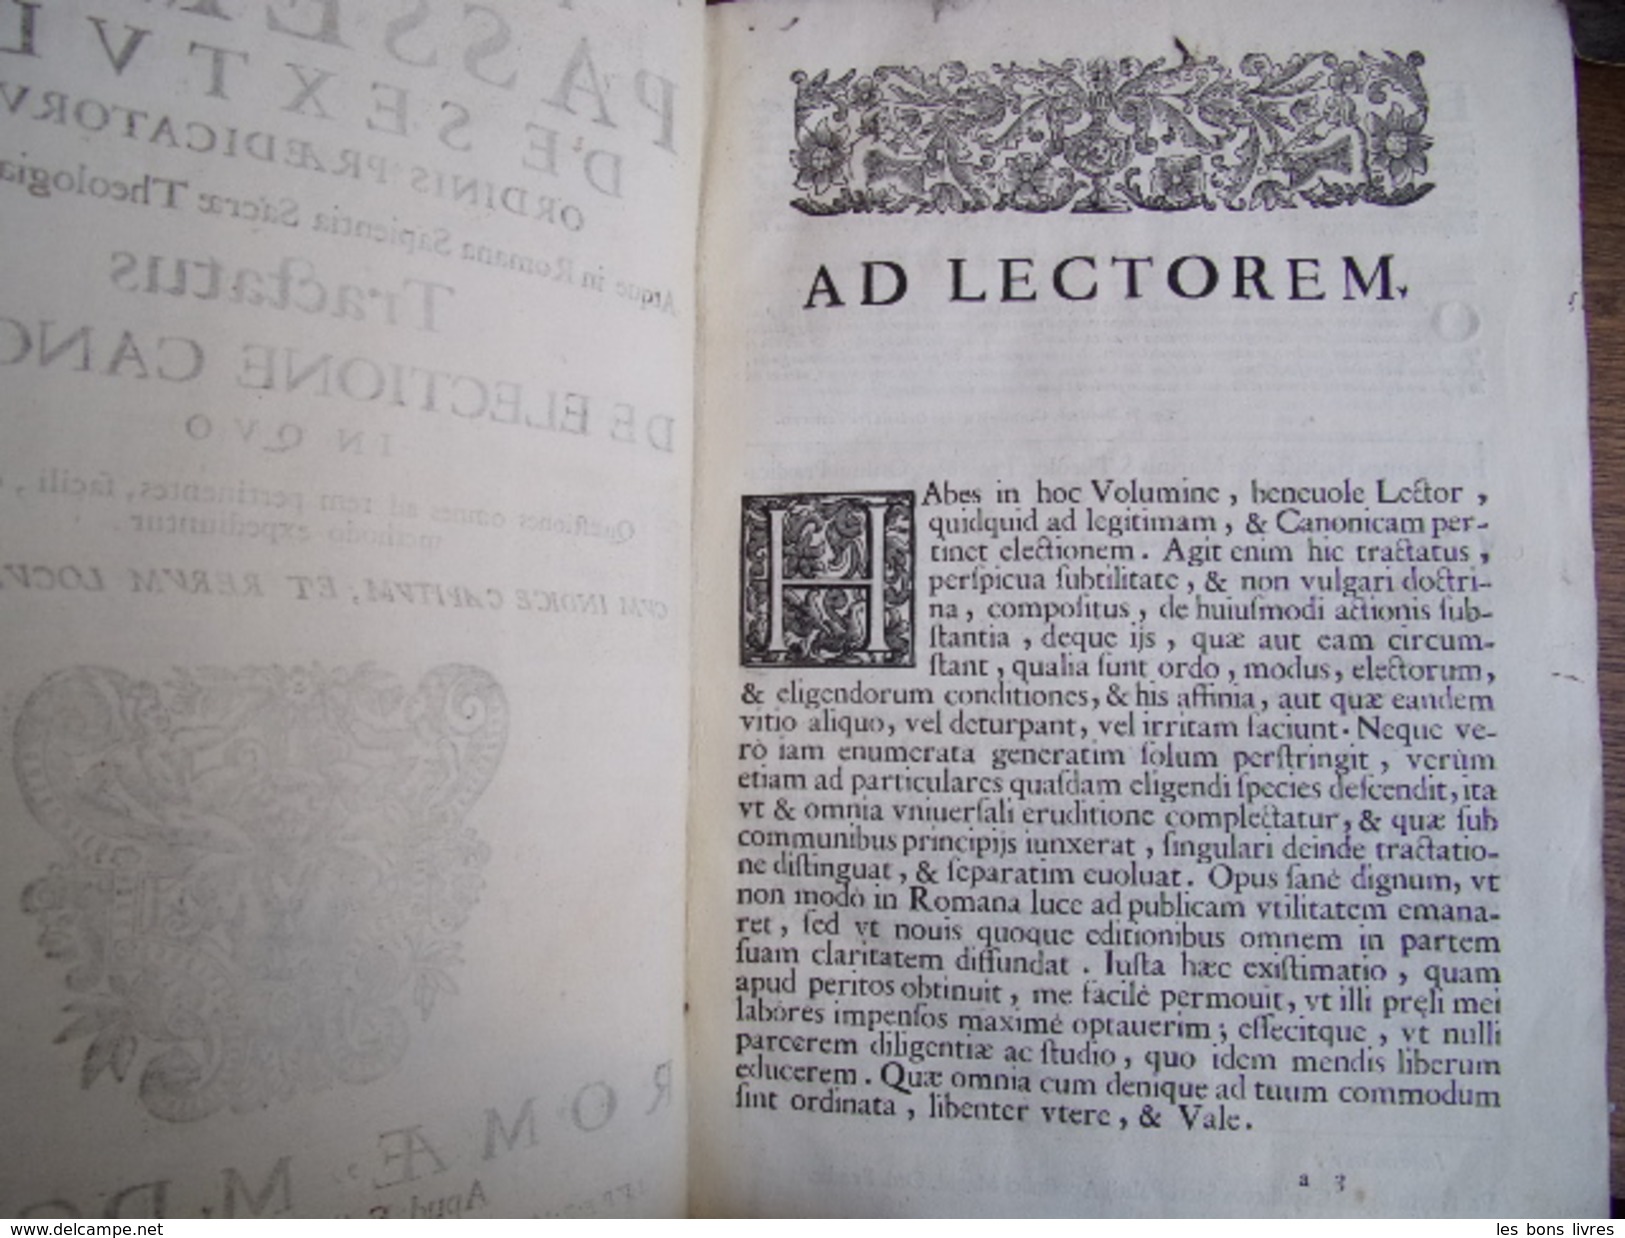 PASSERINI DE SEXTVLA. TRACTATUS DE ELECTIONE CANONICA IN QVO In Folio 1643 Rare - Antes De 18avo Siglo